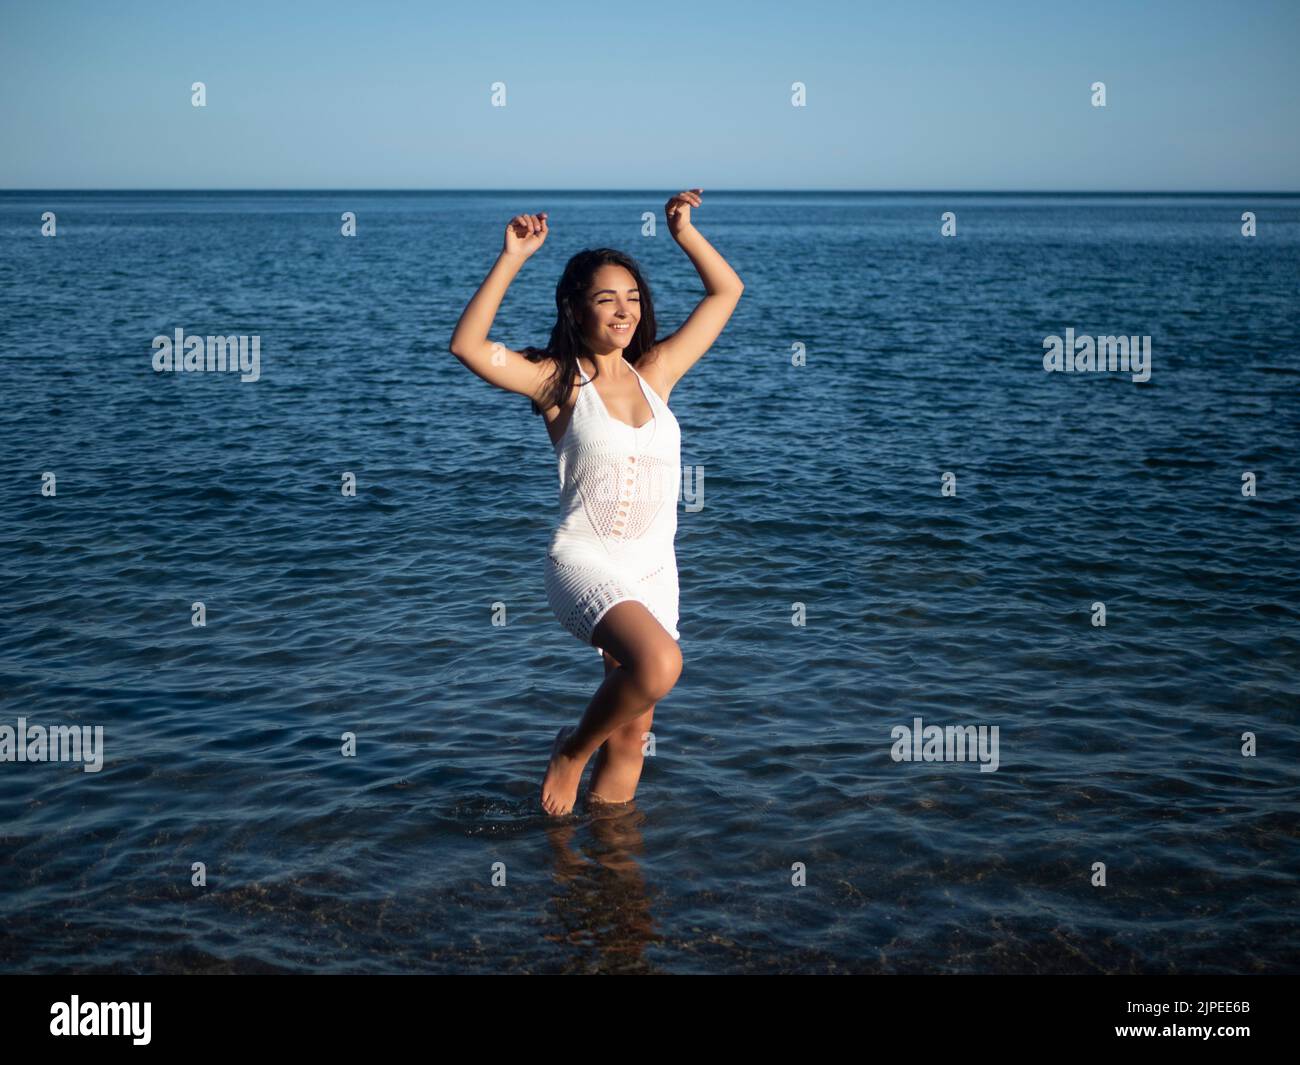 Pleine longueur de contenu jeune hispanique femme voyageur avec de longs cheveux foncés en crochet blanc robe marchant dans l'eau peu profonde de mer et souriant pendant le summe Banque D'Images